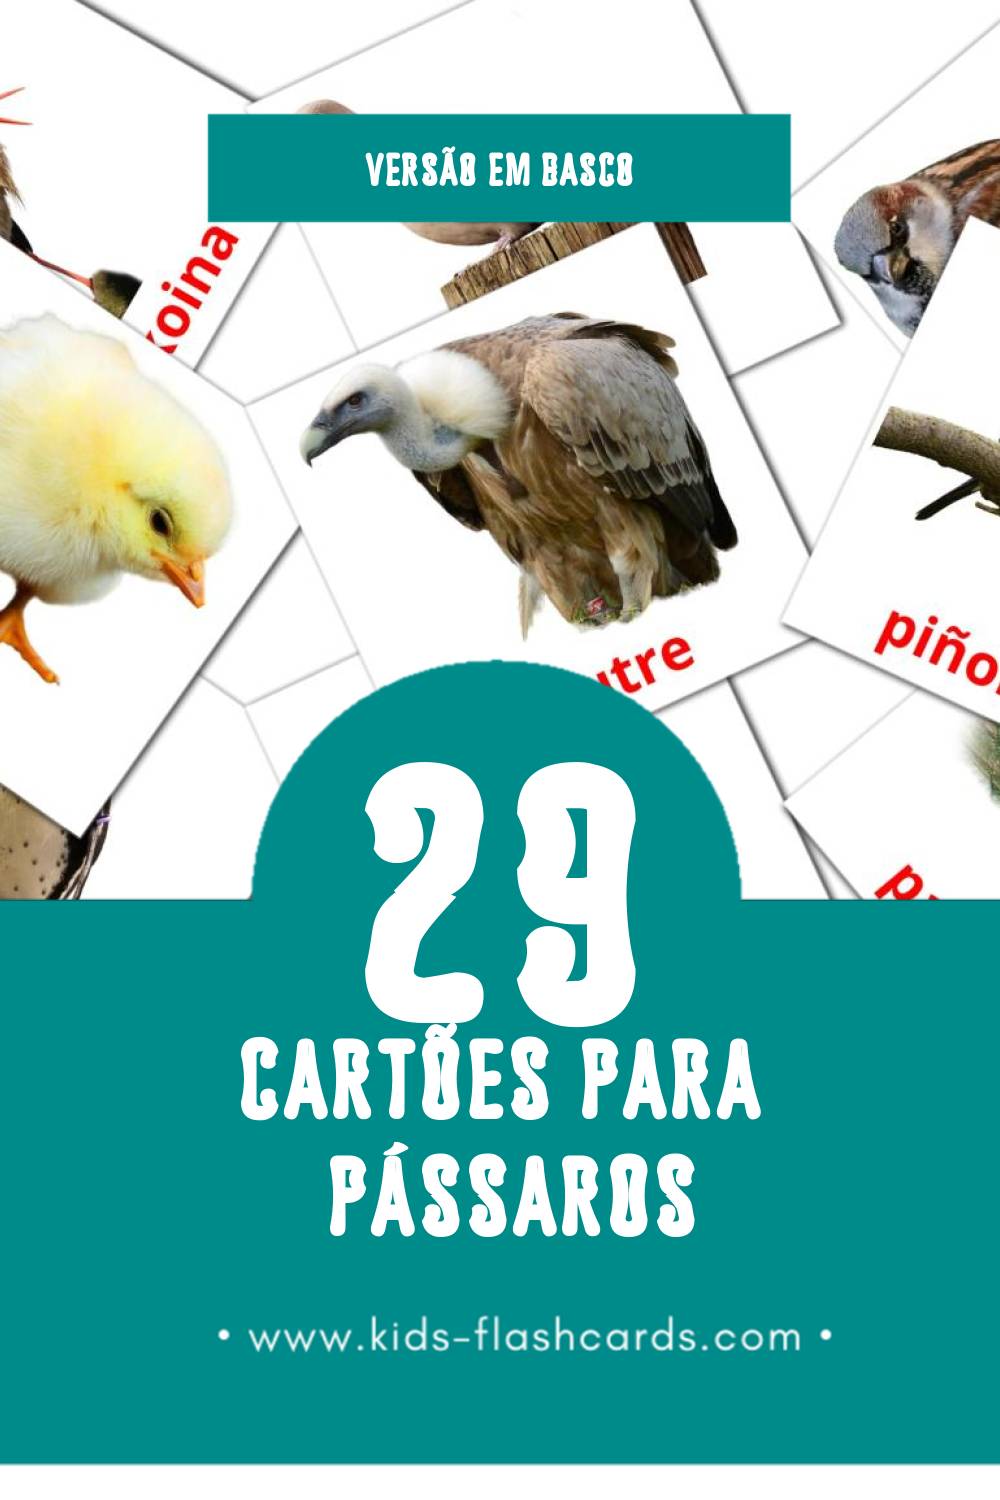 Flashcards de Hegaztiak Visuais para Toddlers (29 cartões em Basco)